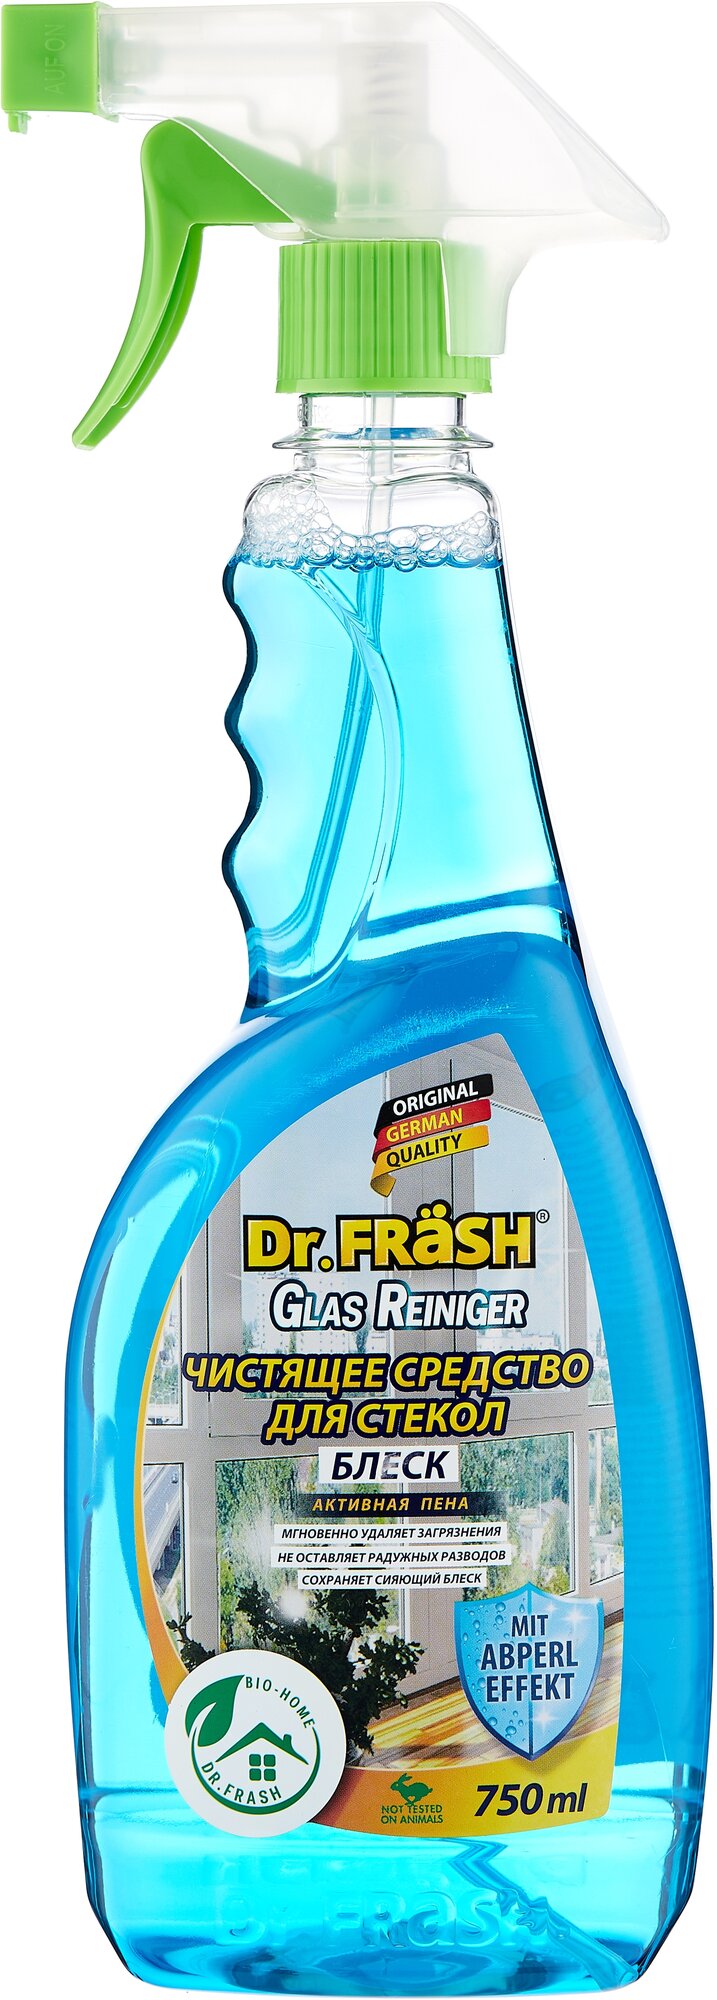 Dr.FRASH Чистящее средство для стекол "блеск" 750 мл